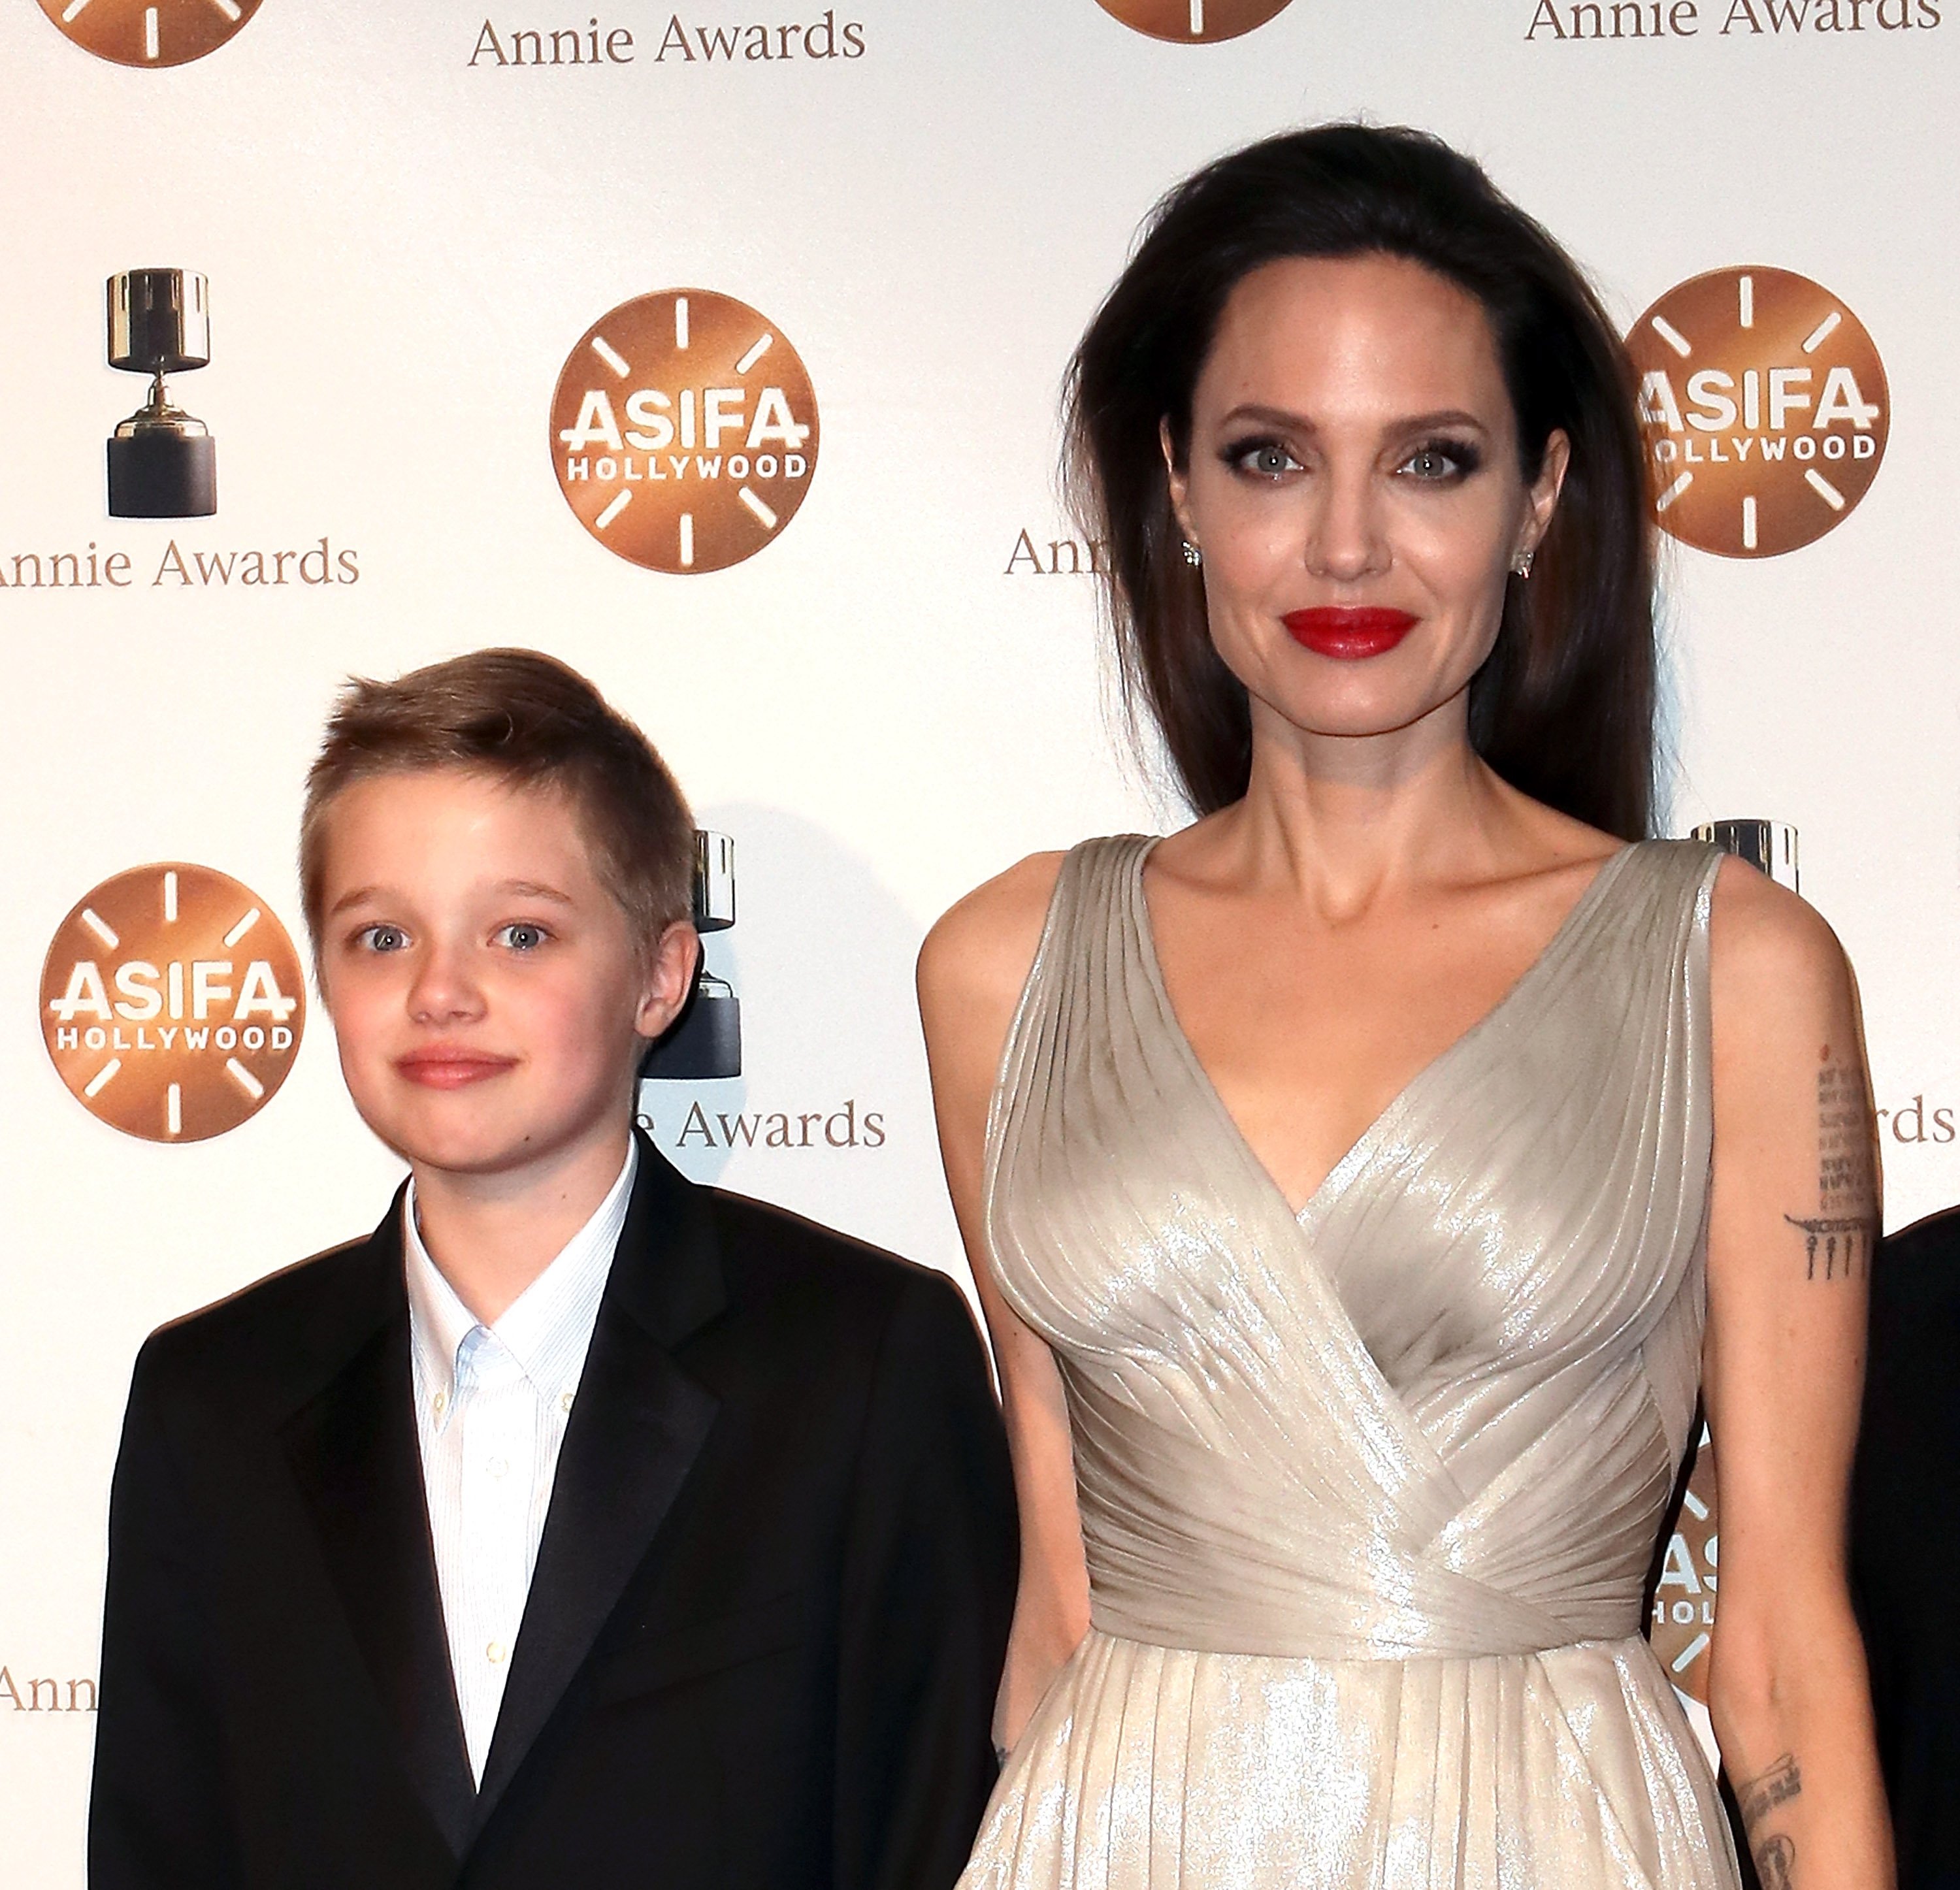 Shiloh Nouvel Jolie-Pitt et sa mère, Angelina Jolie, lors de la 45e édition des Annie Awards, le 3 février 2018, à Los Angeles, en Californie | Source : Getty Images